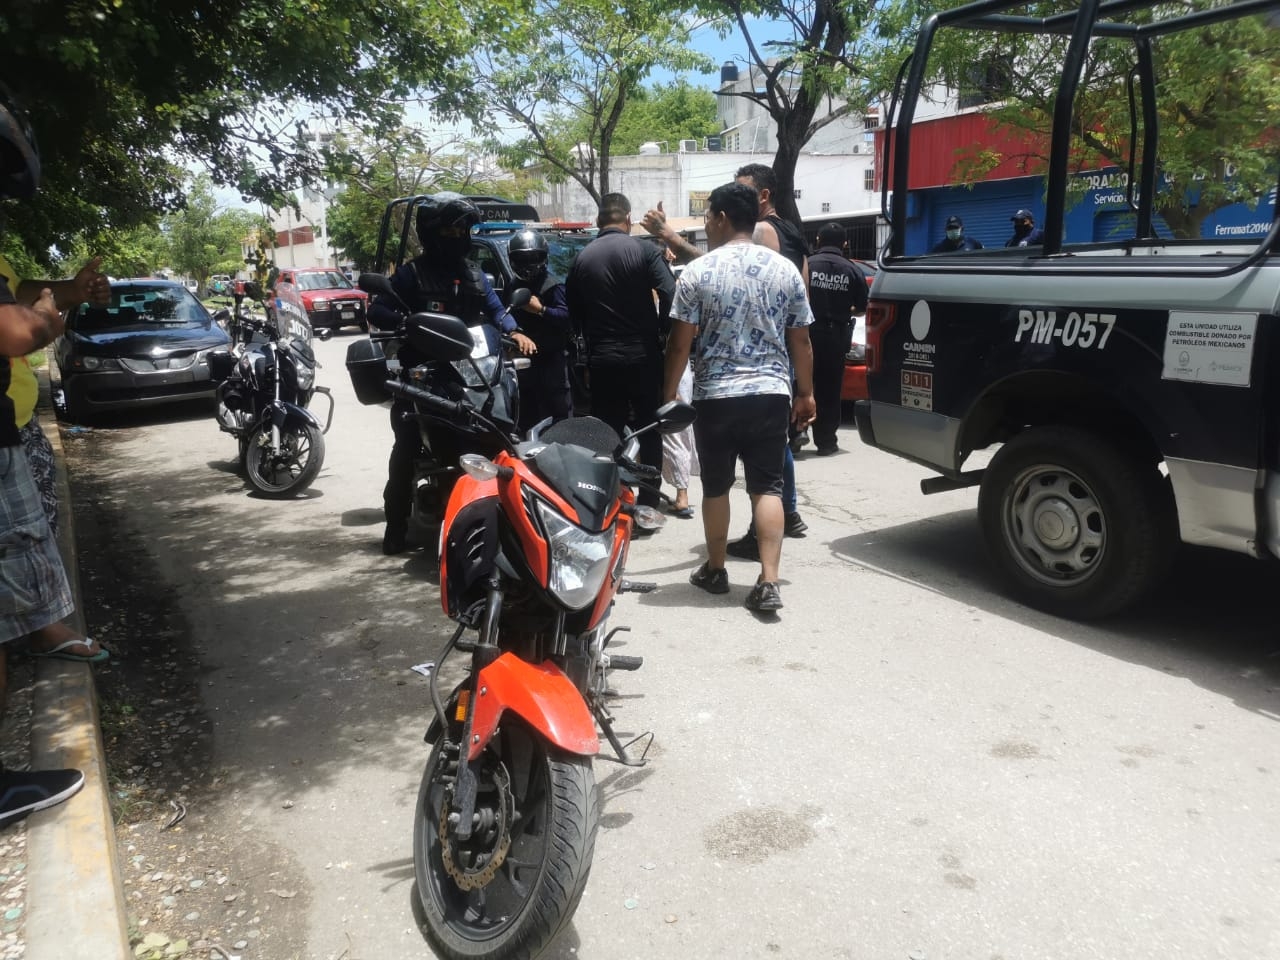 En las cámaras se observaban cómo dos hombres intentaron llevarse una motocicleta, lo que alertó a las autoridades policiacas